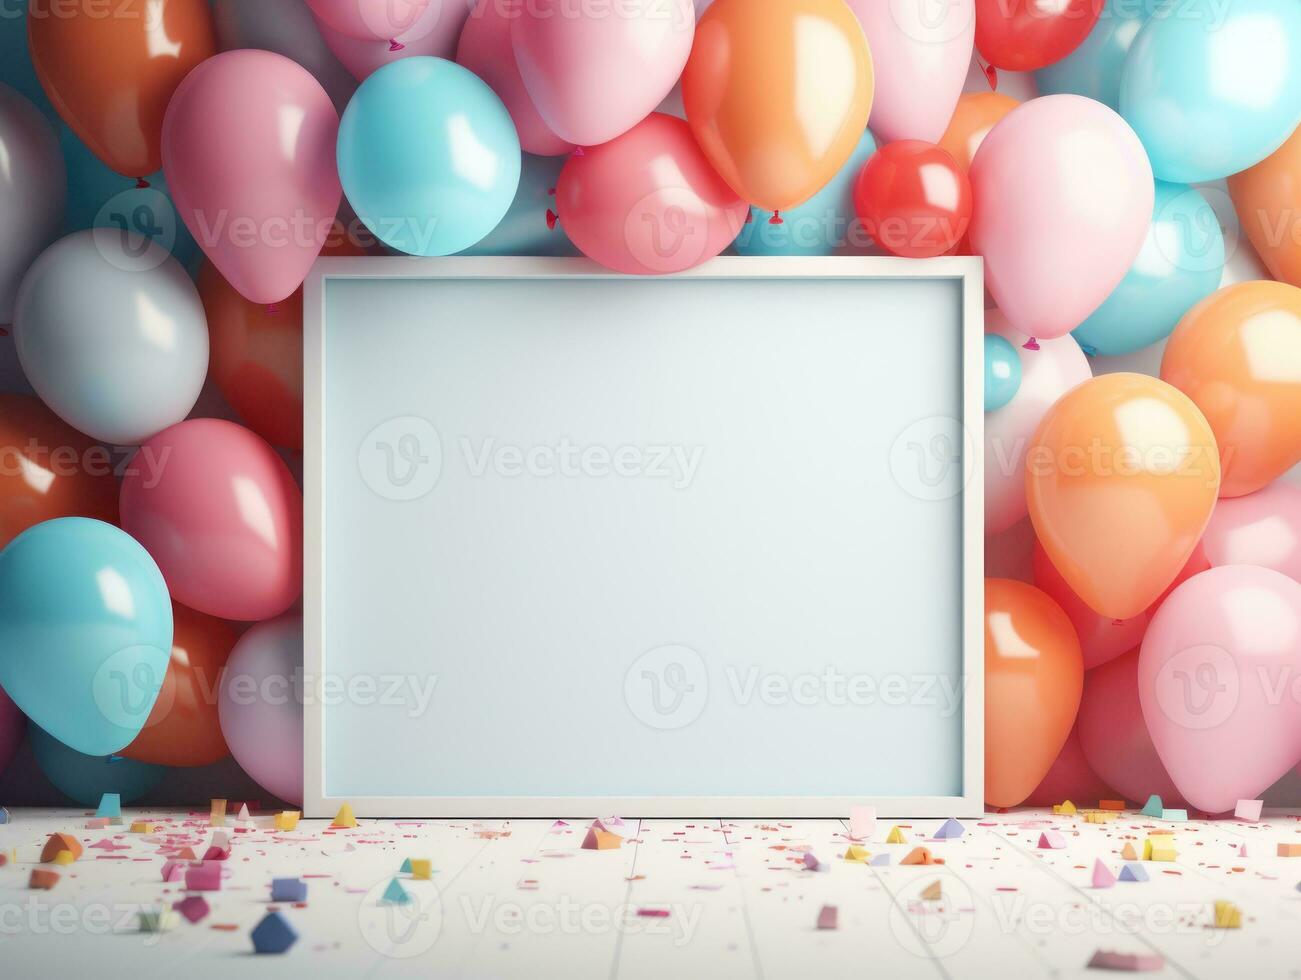 födelsedag bakgrund med ballonger foto